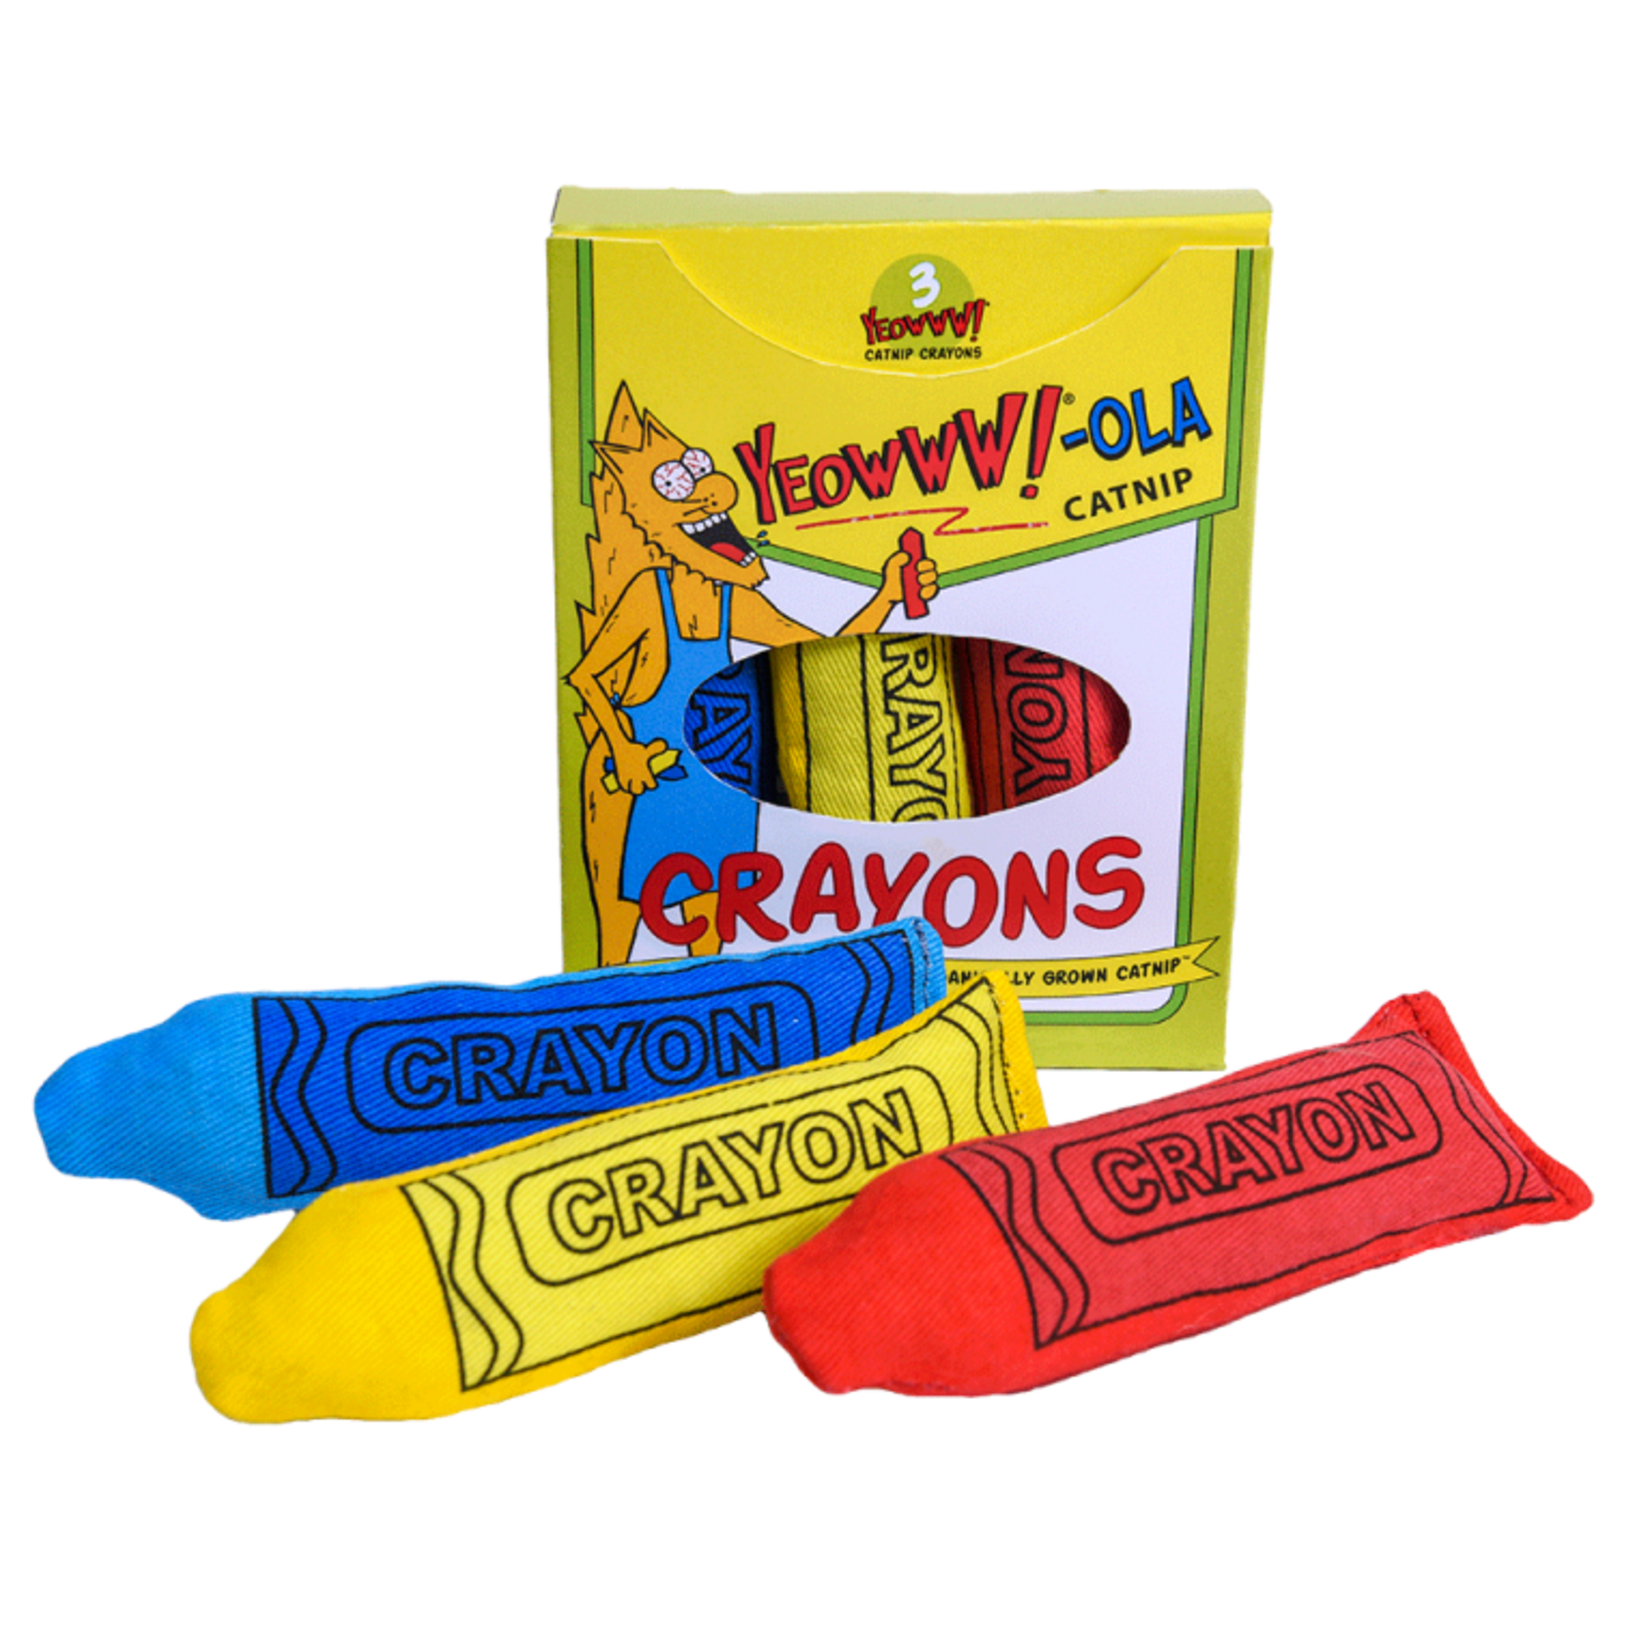 Yeowww! Yeowww!-ola Catnip Crayons Cat Toy 3pk